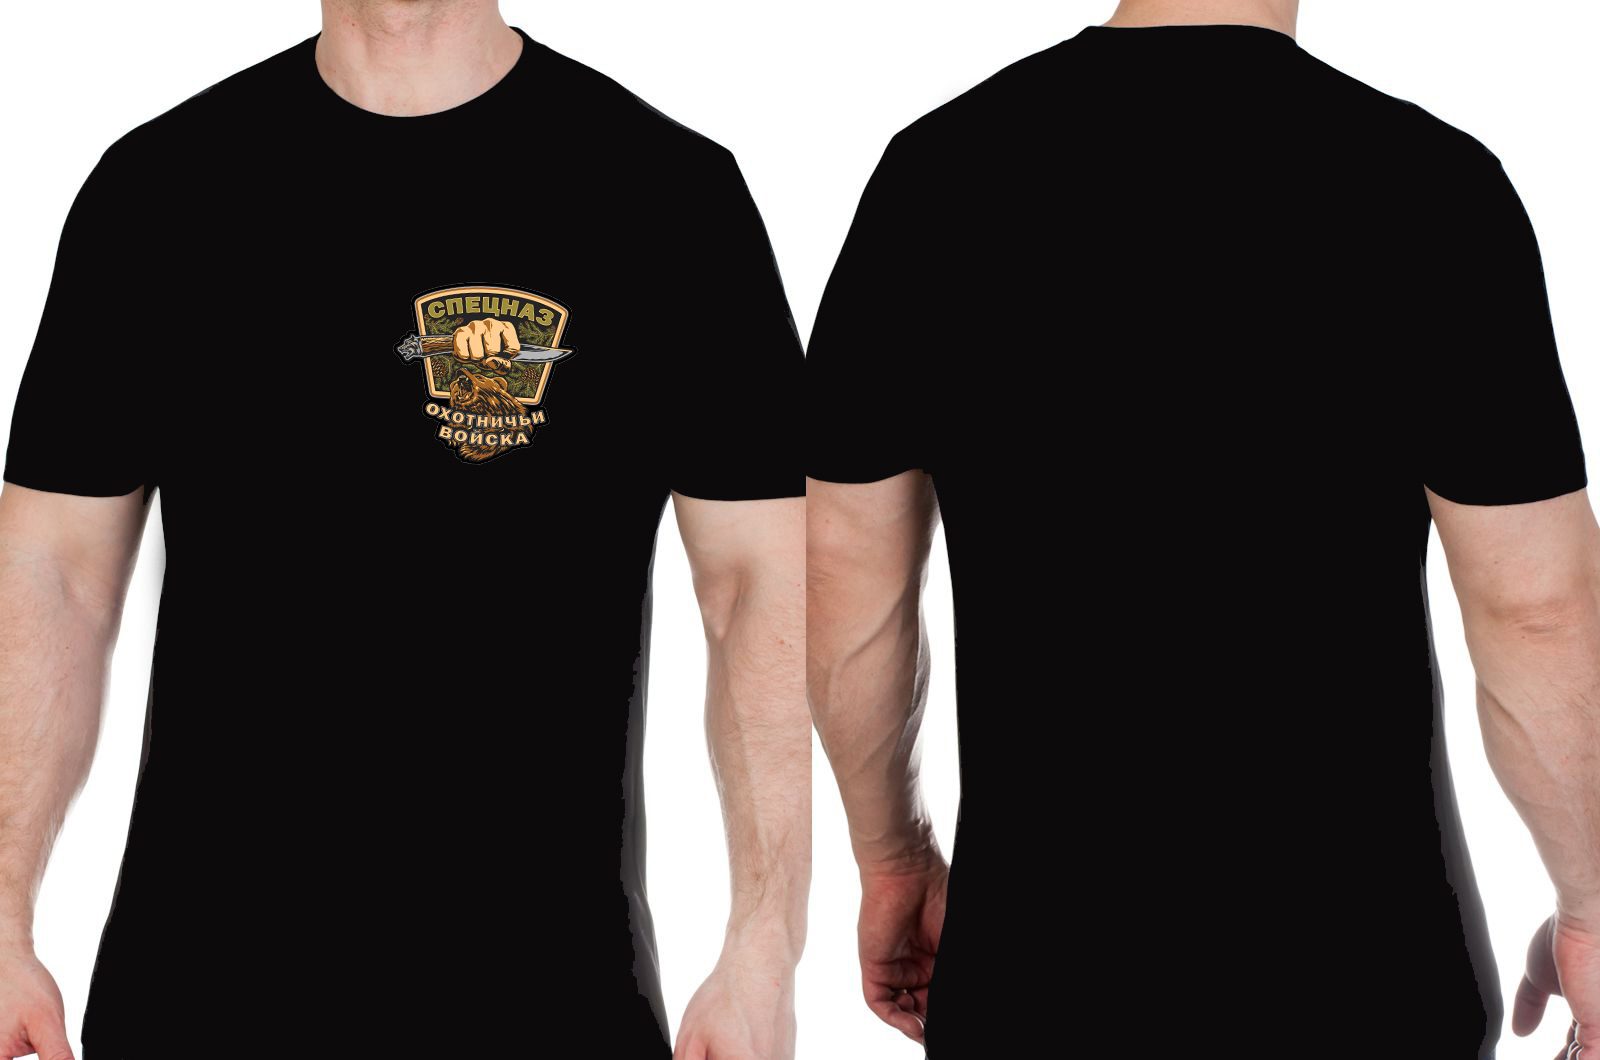 Черная мужская футболка с эмблемой Охотничьих войск 